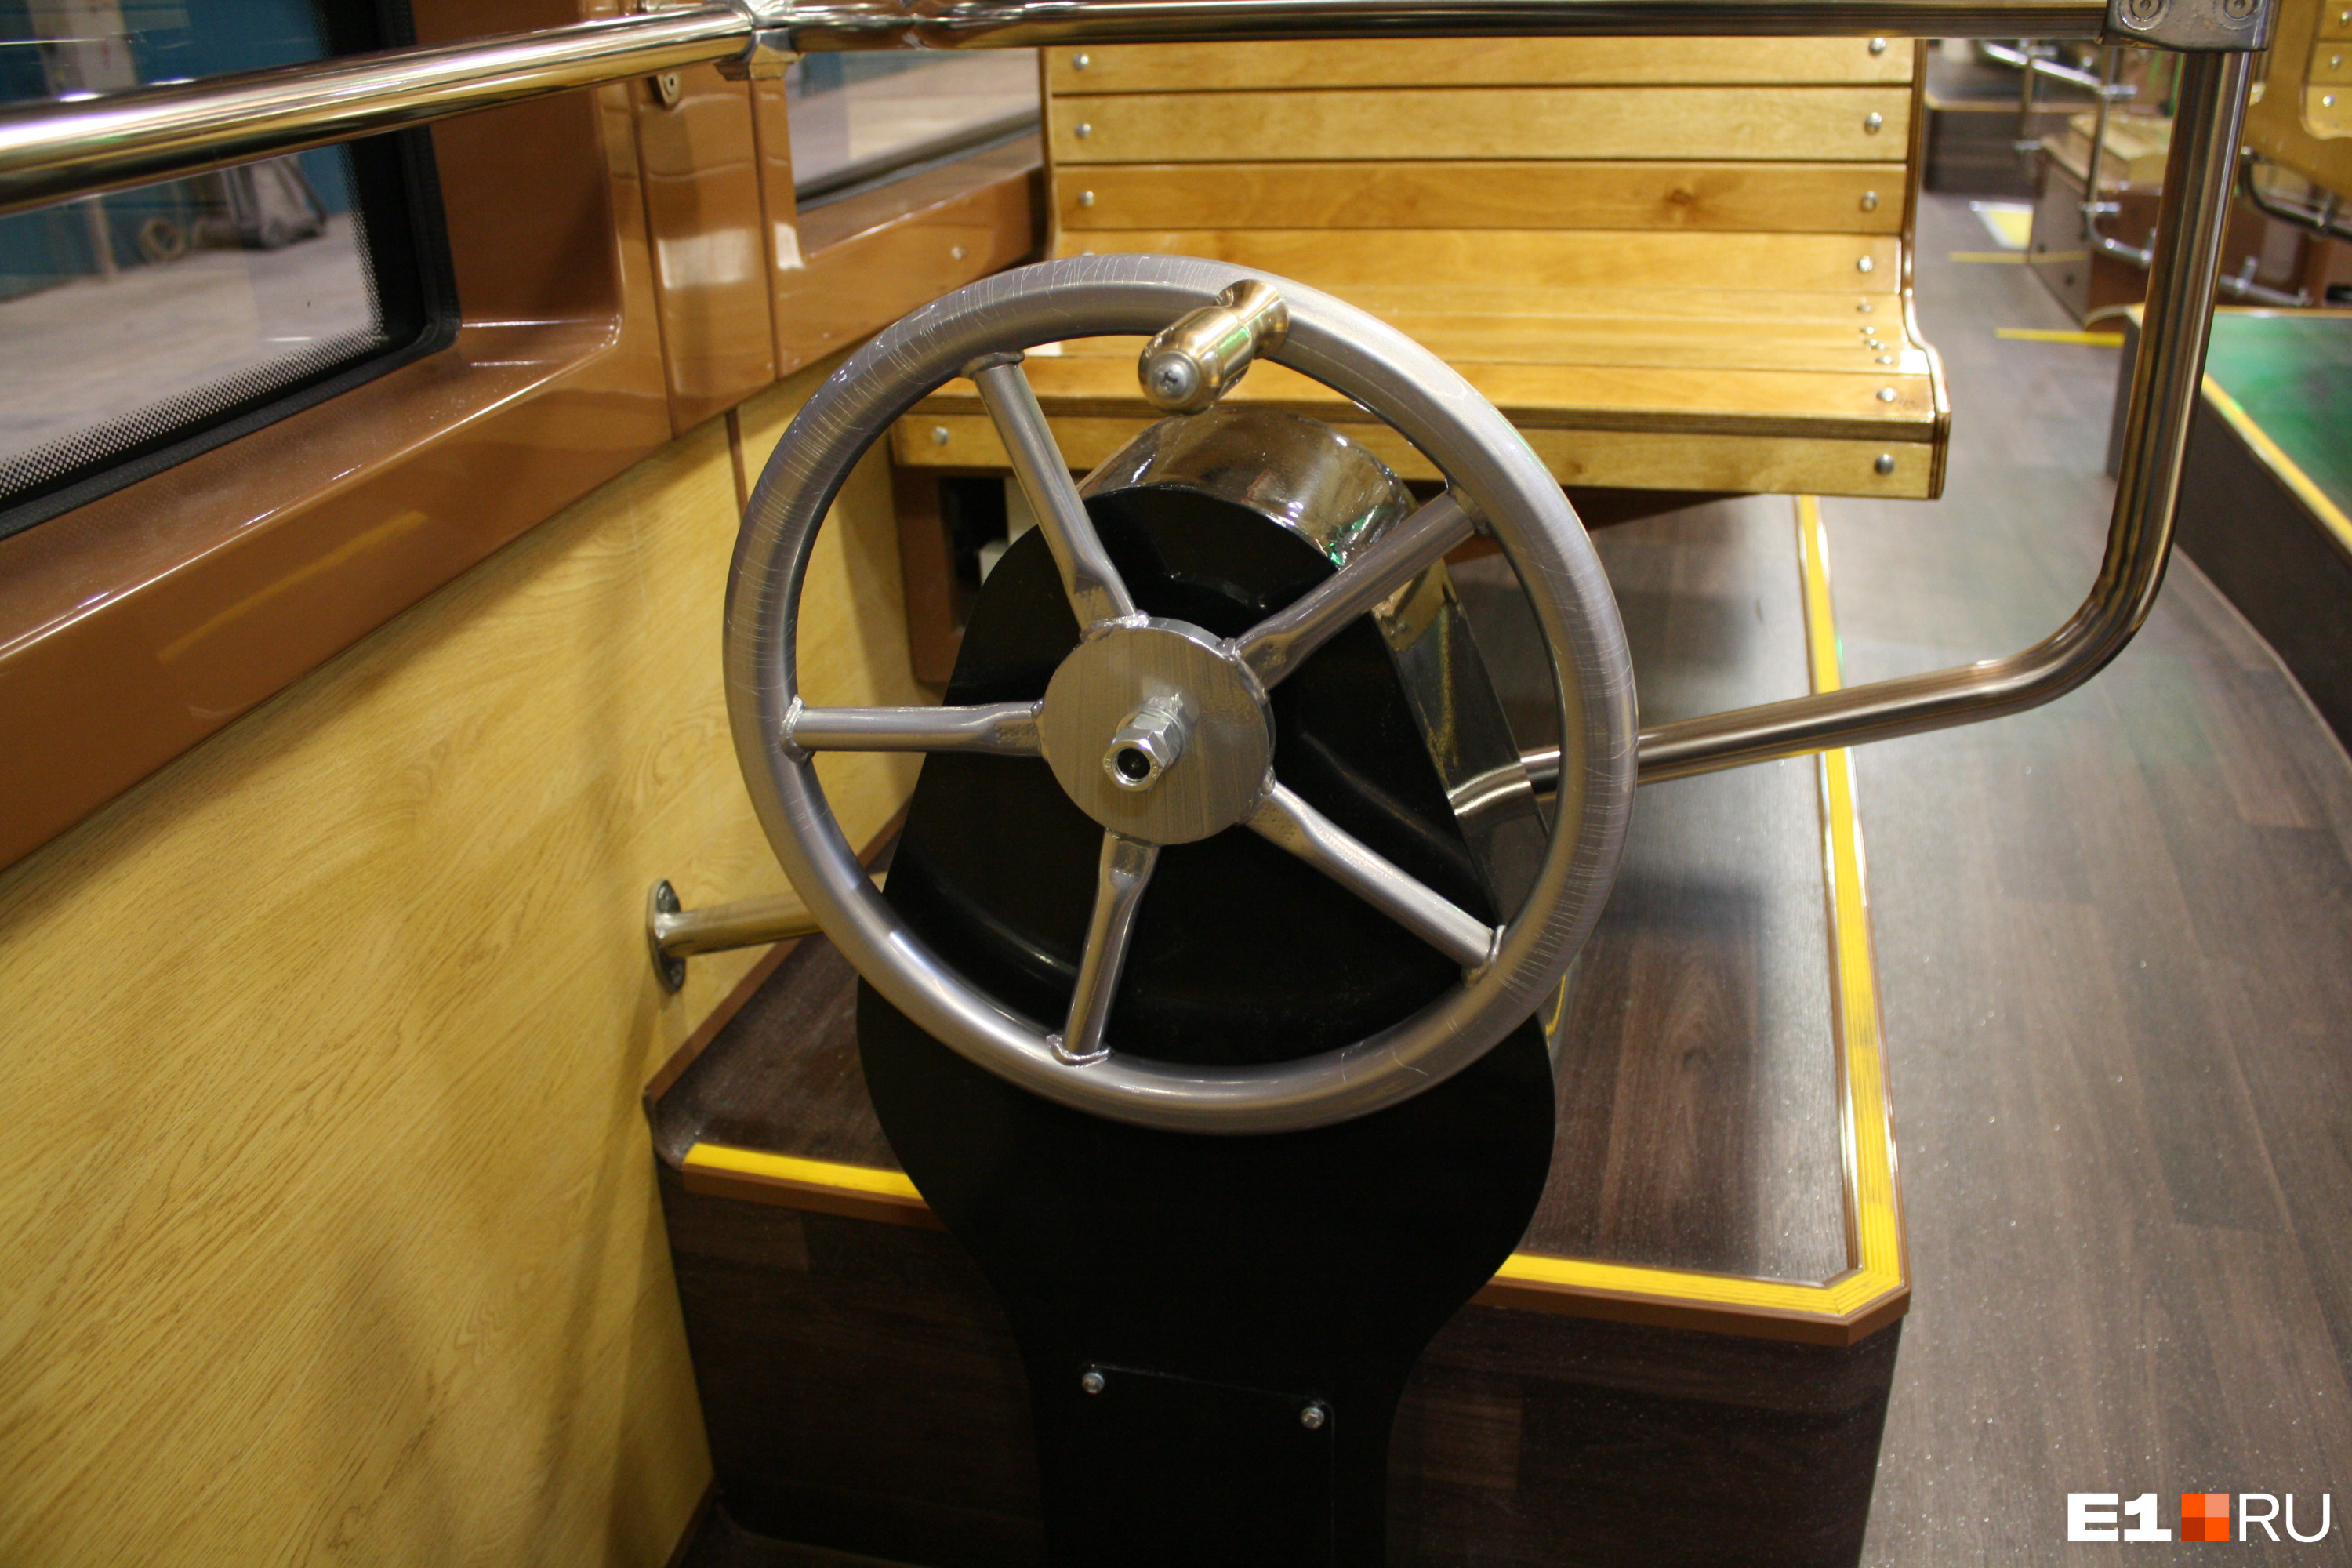 В задней части салона находится колесо, имитирующее стоп-кран старинных вагонов